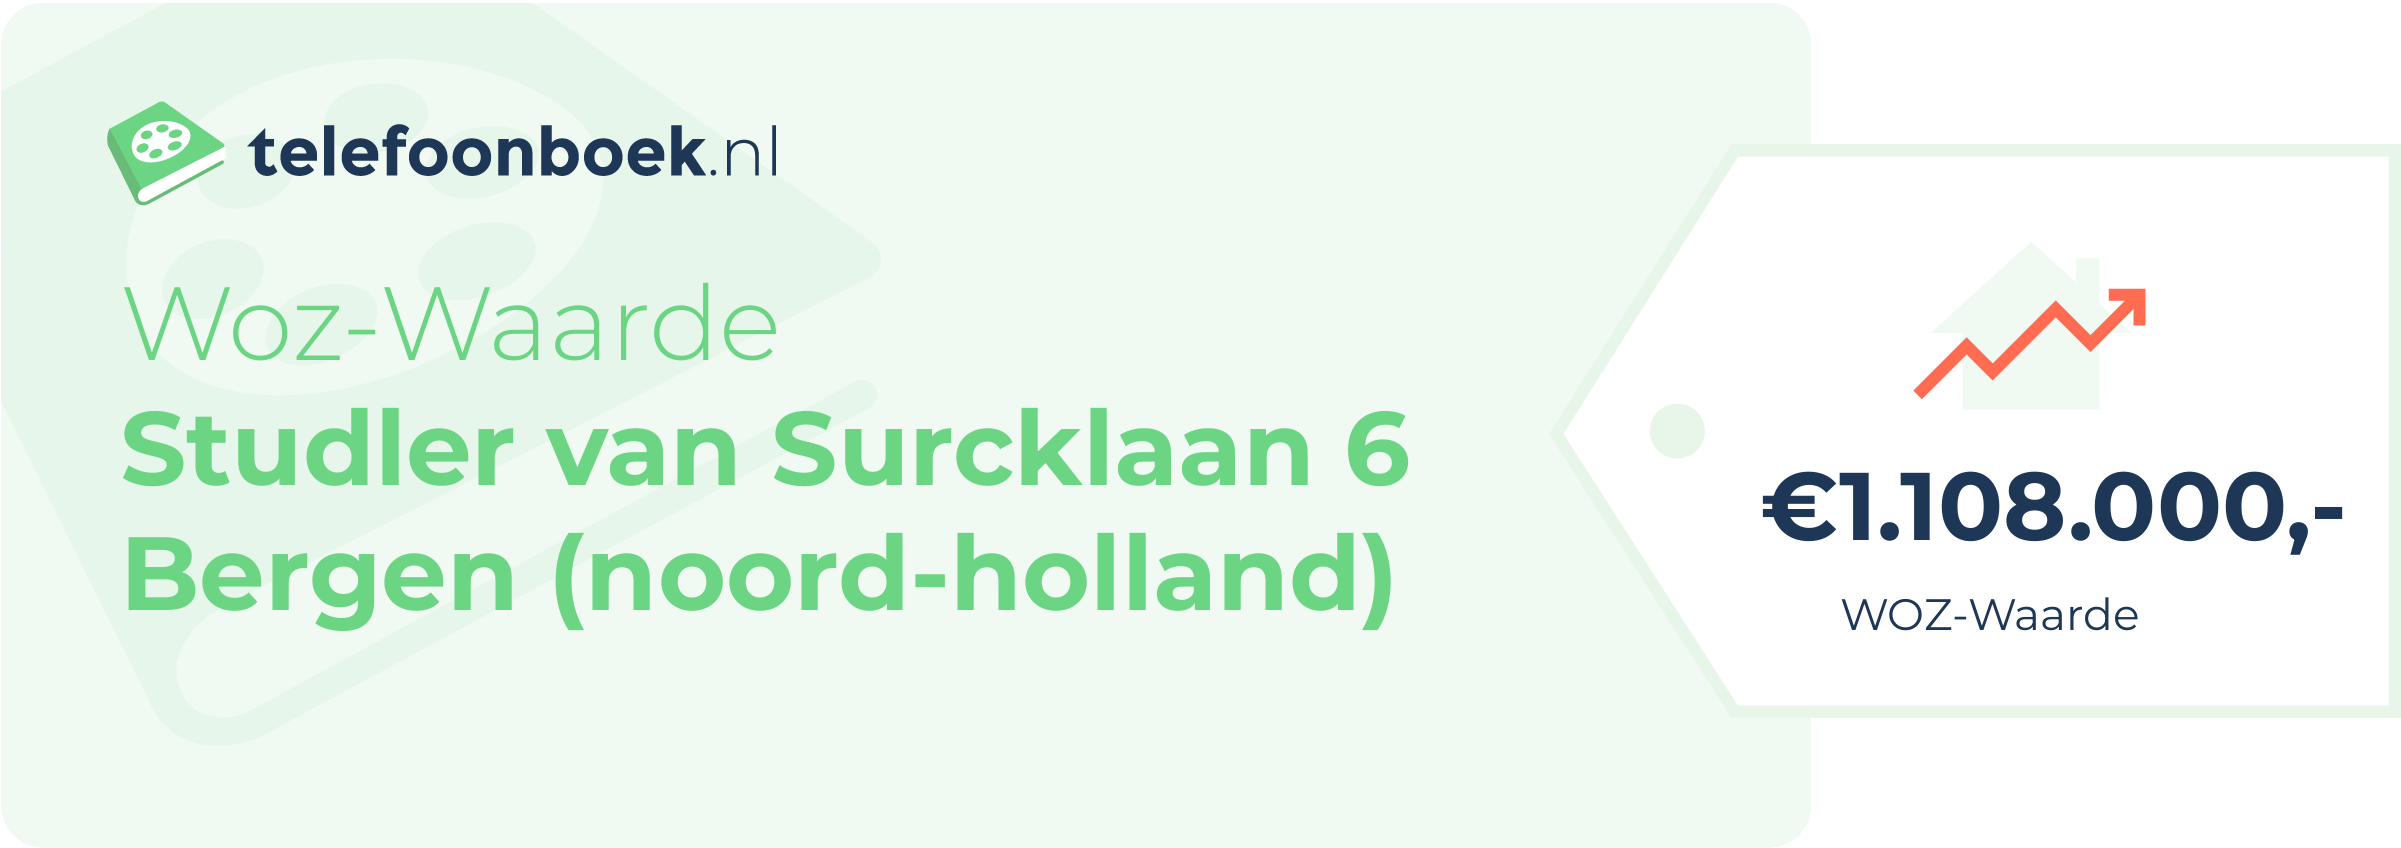 WOZ-waarde Studler Van Surcklaan 6 Bergen (Noord-Holland)